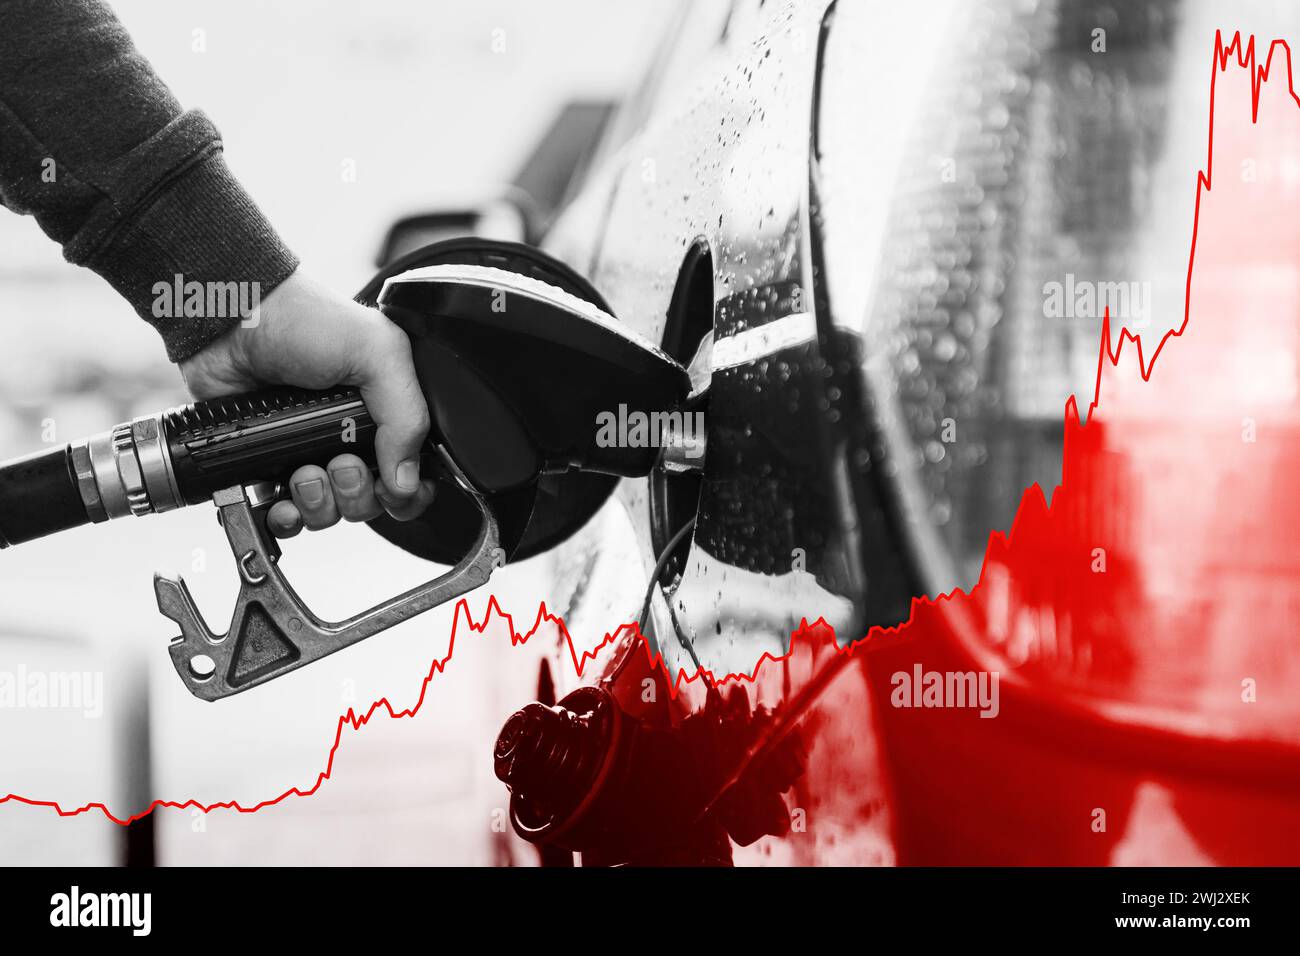 Main avec la buse de carburant et le graphique croissant montrant l'augmentation du prix de l'essence pendant la crise énergétique Banque D'Images